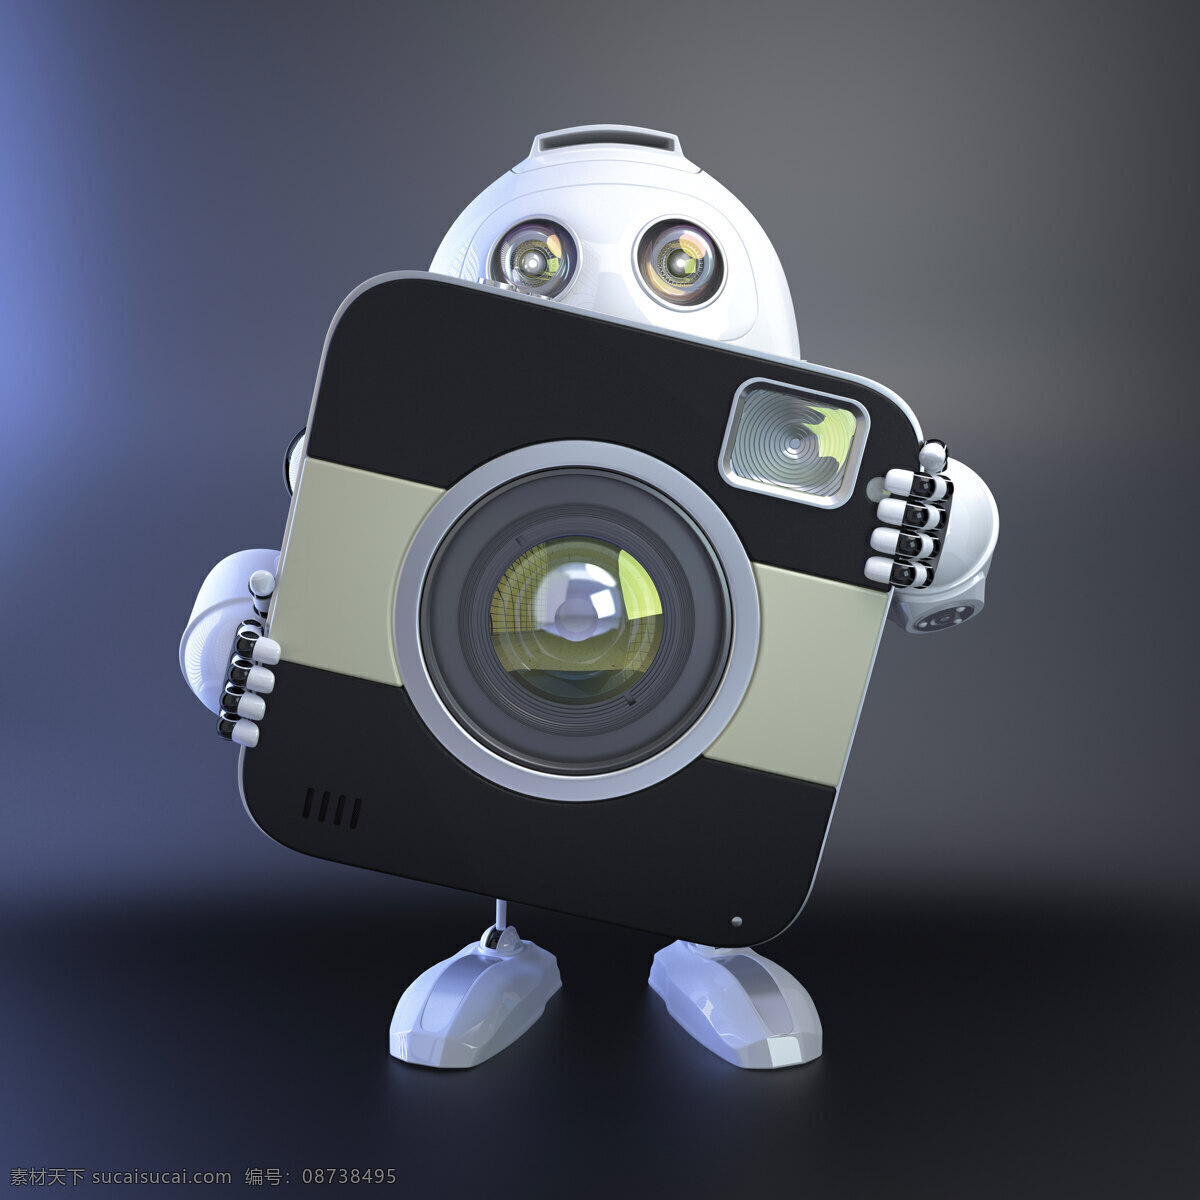 紧凑型 数码相机 android 机器人